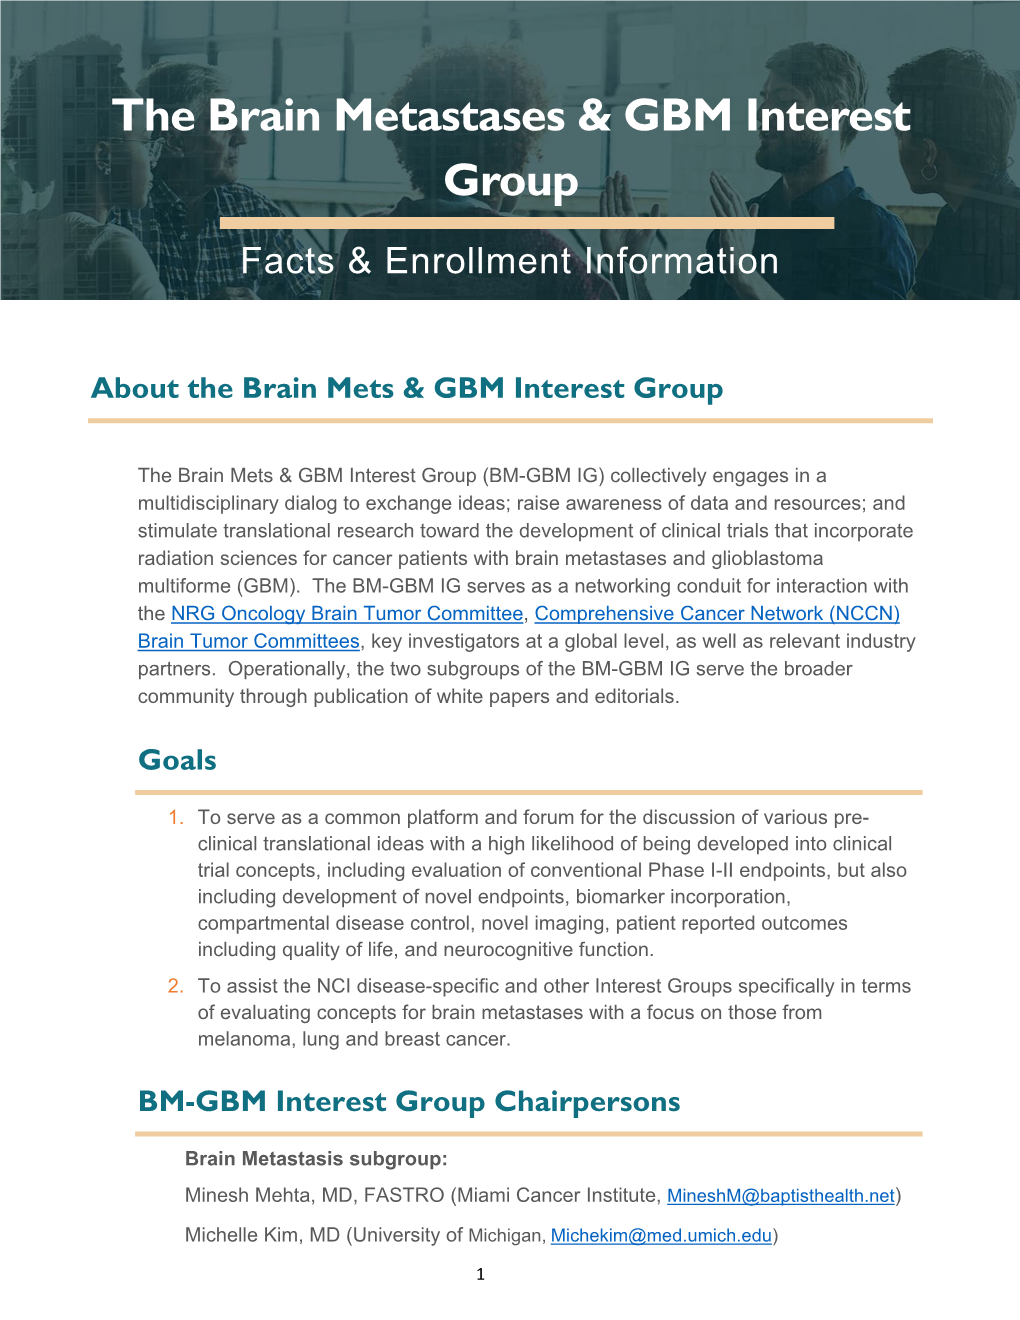 The Brain Metastases & GBM Interest Group